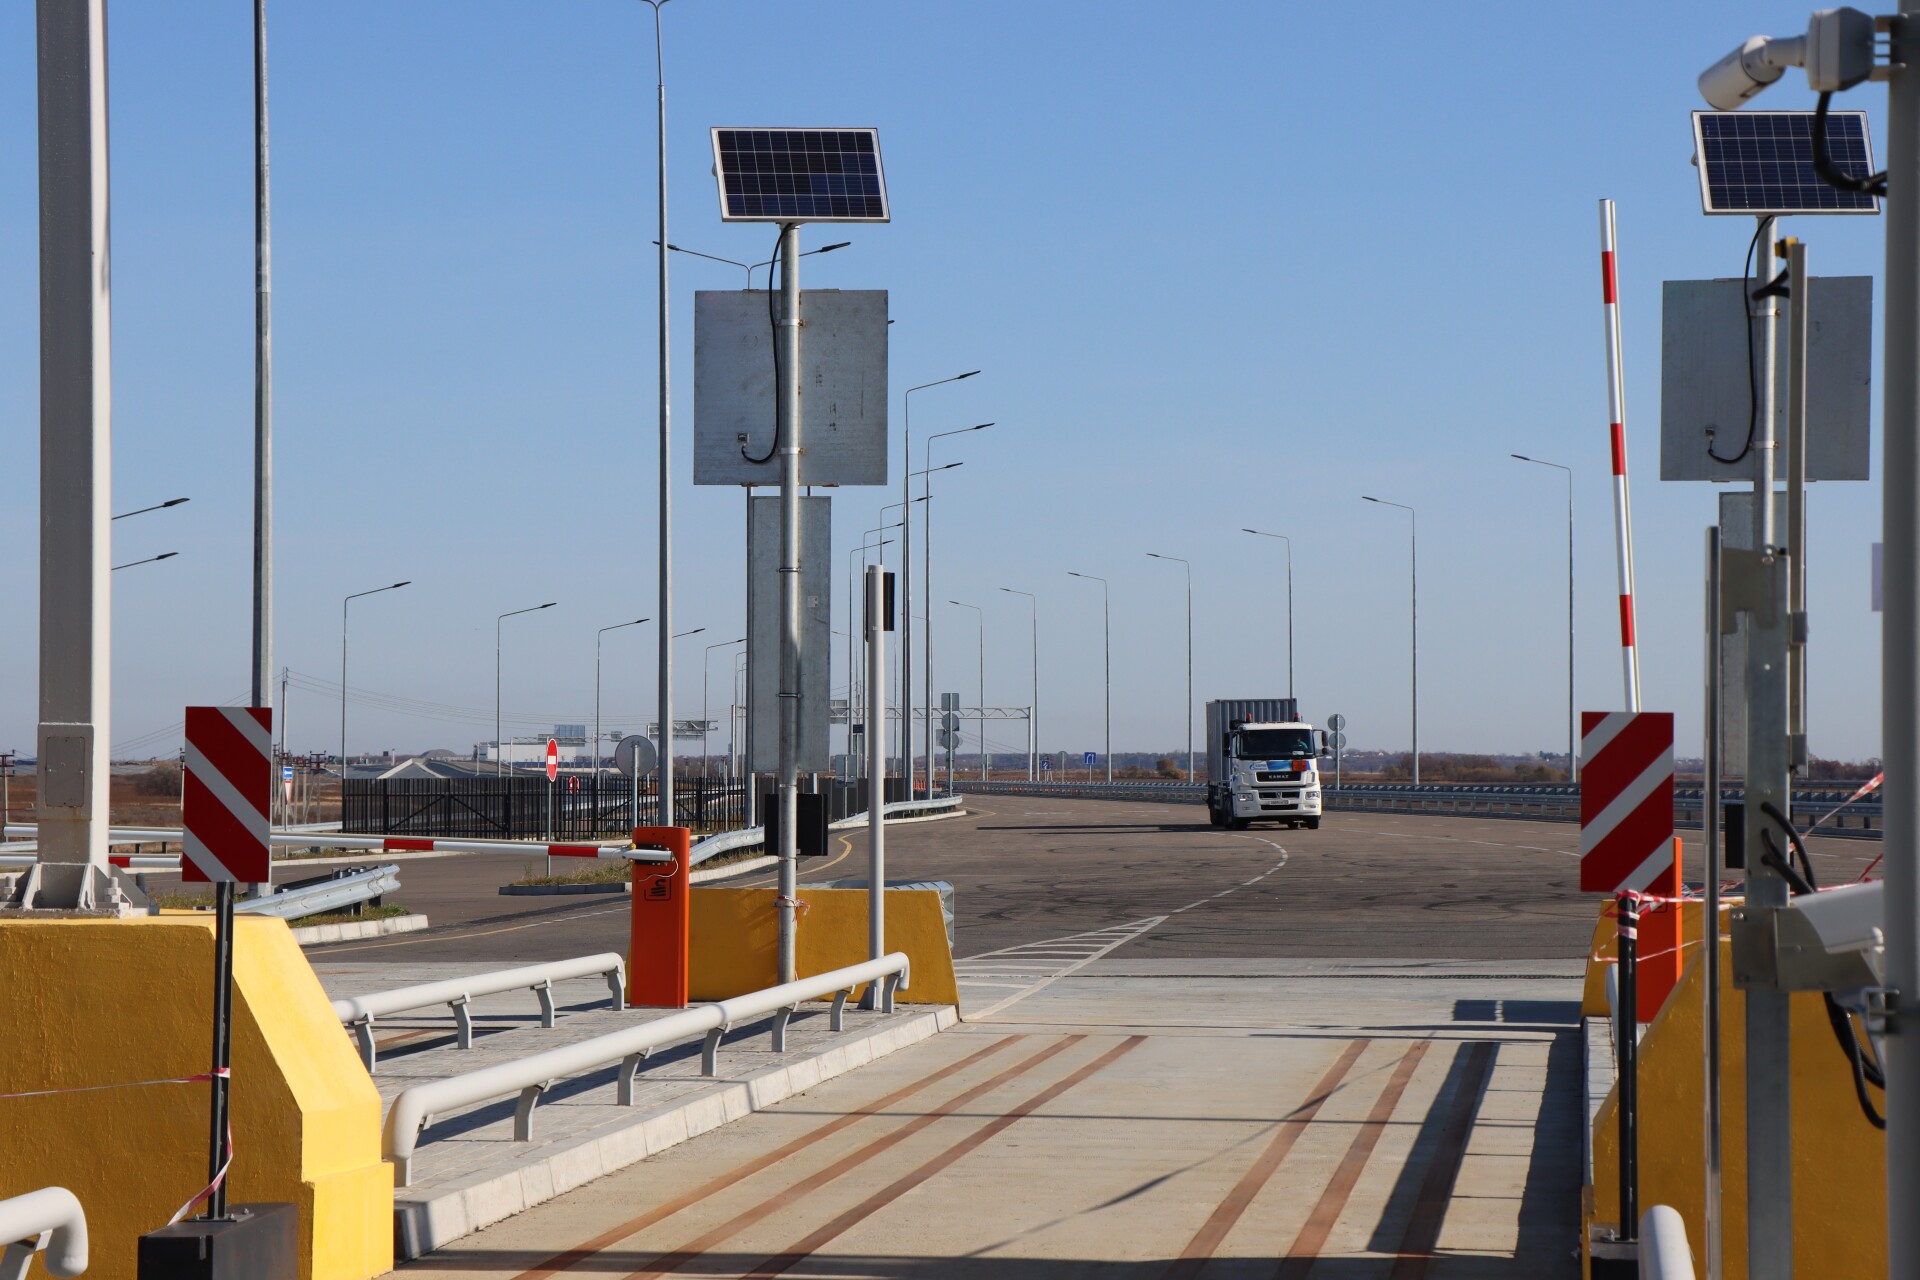 Тестовый бесплатный проезд по мосту из Приамурья в Китай завершится 10 августа